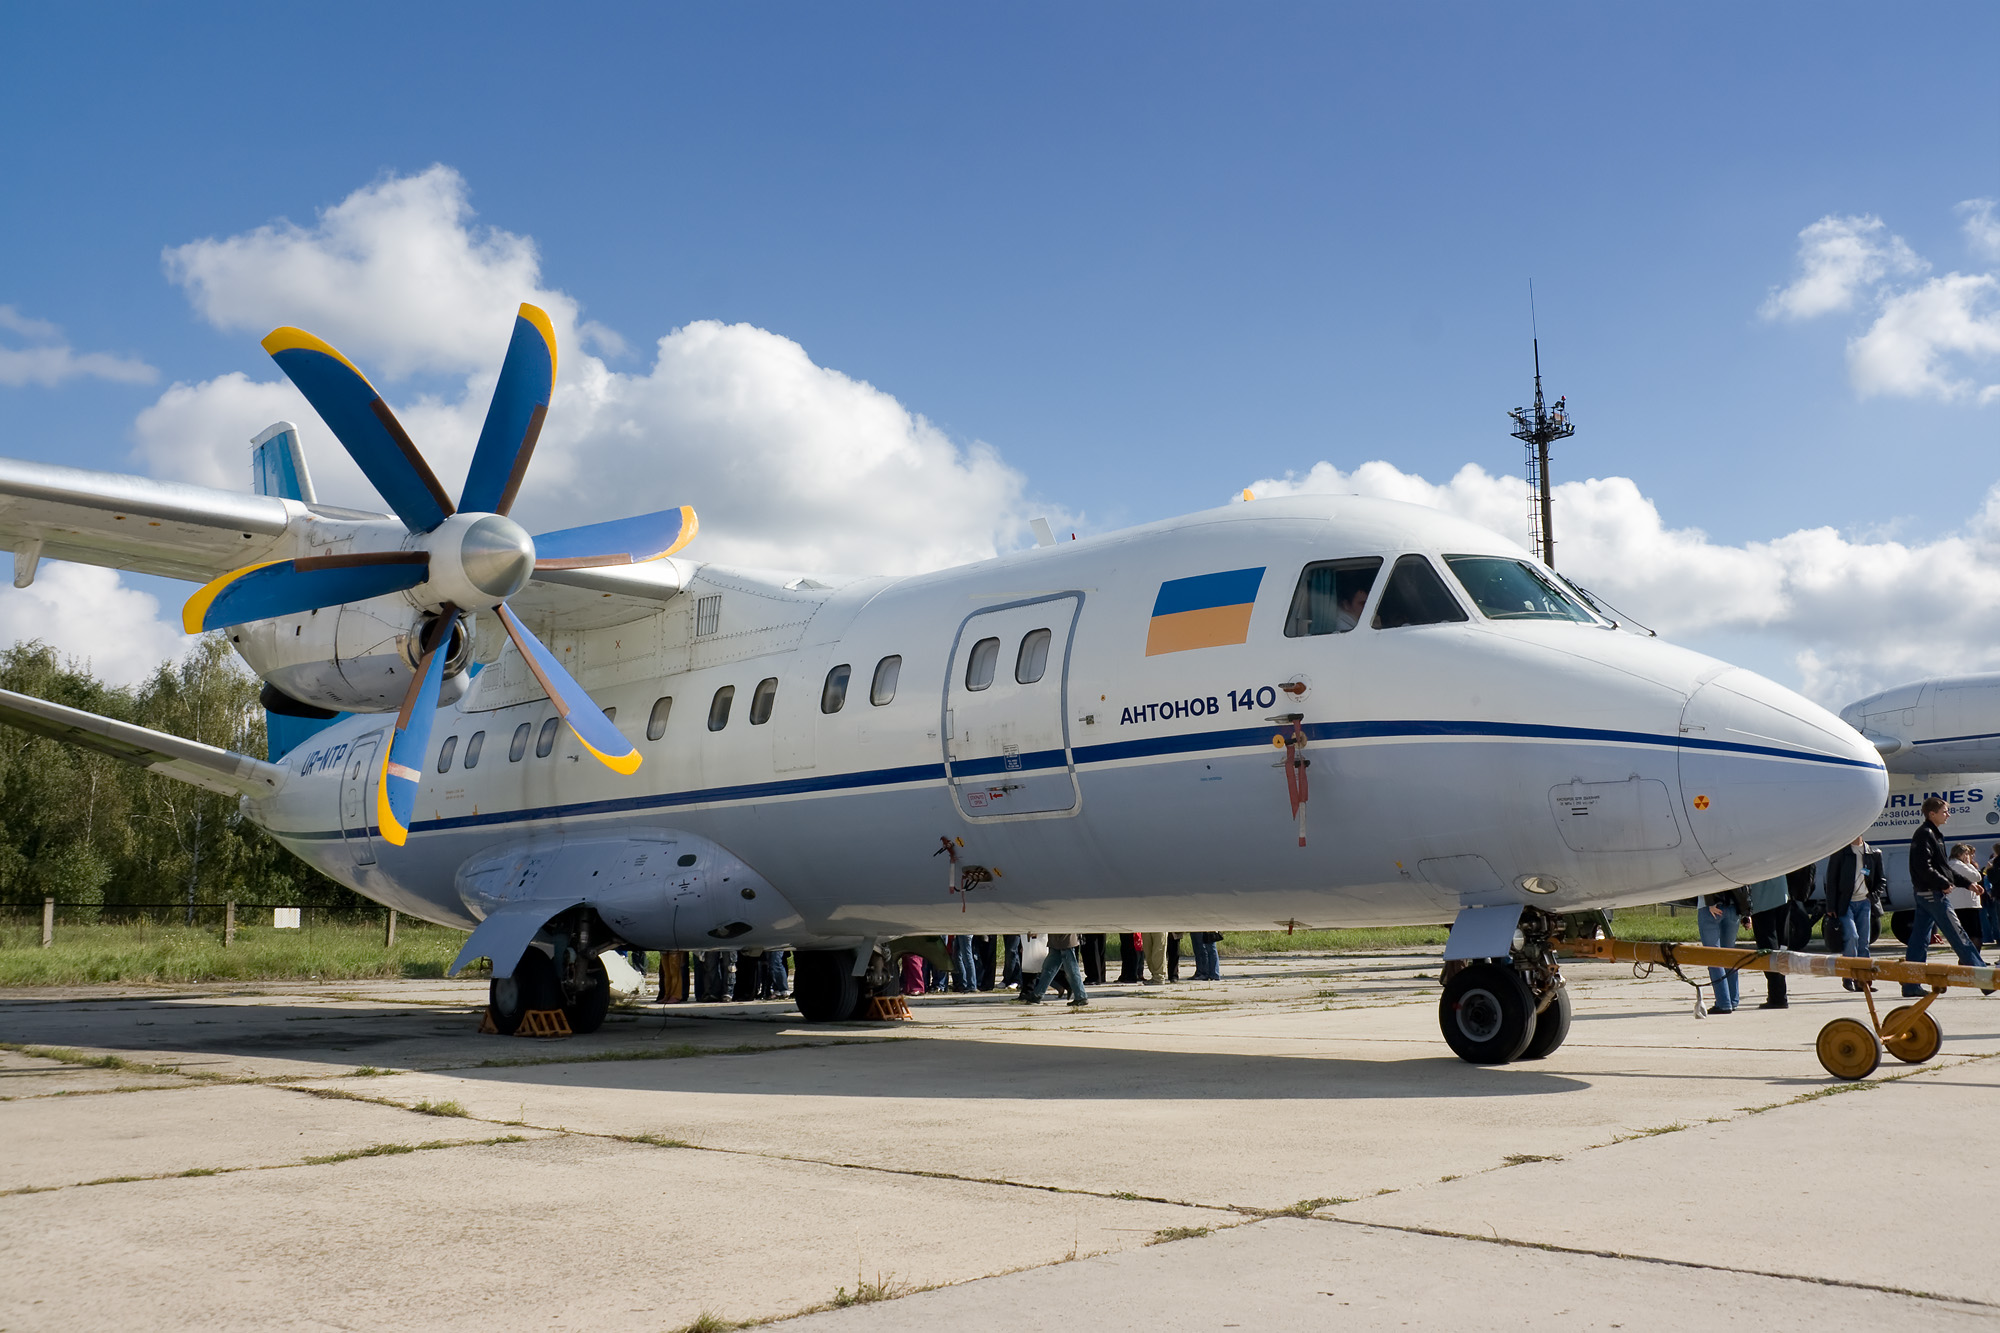 Antonov An-140 next